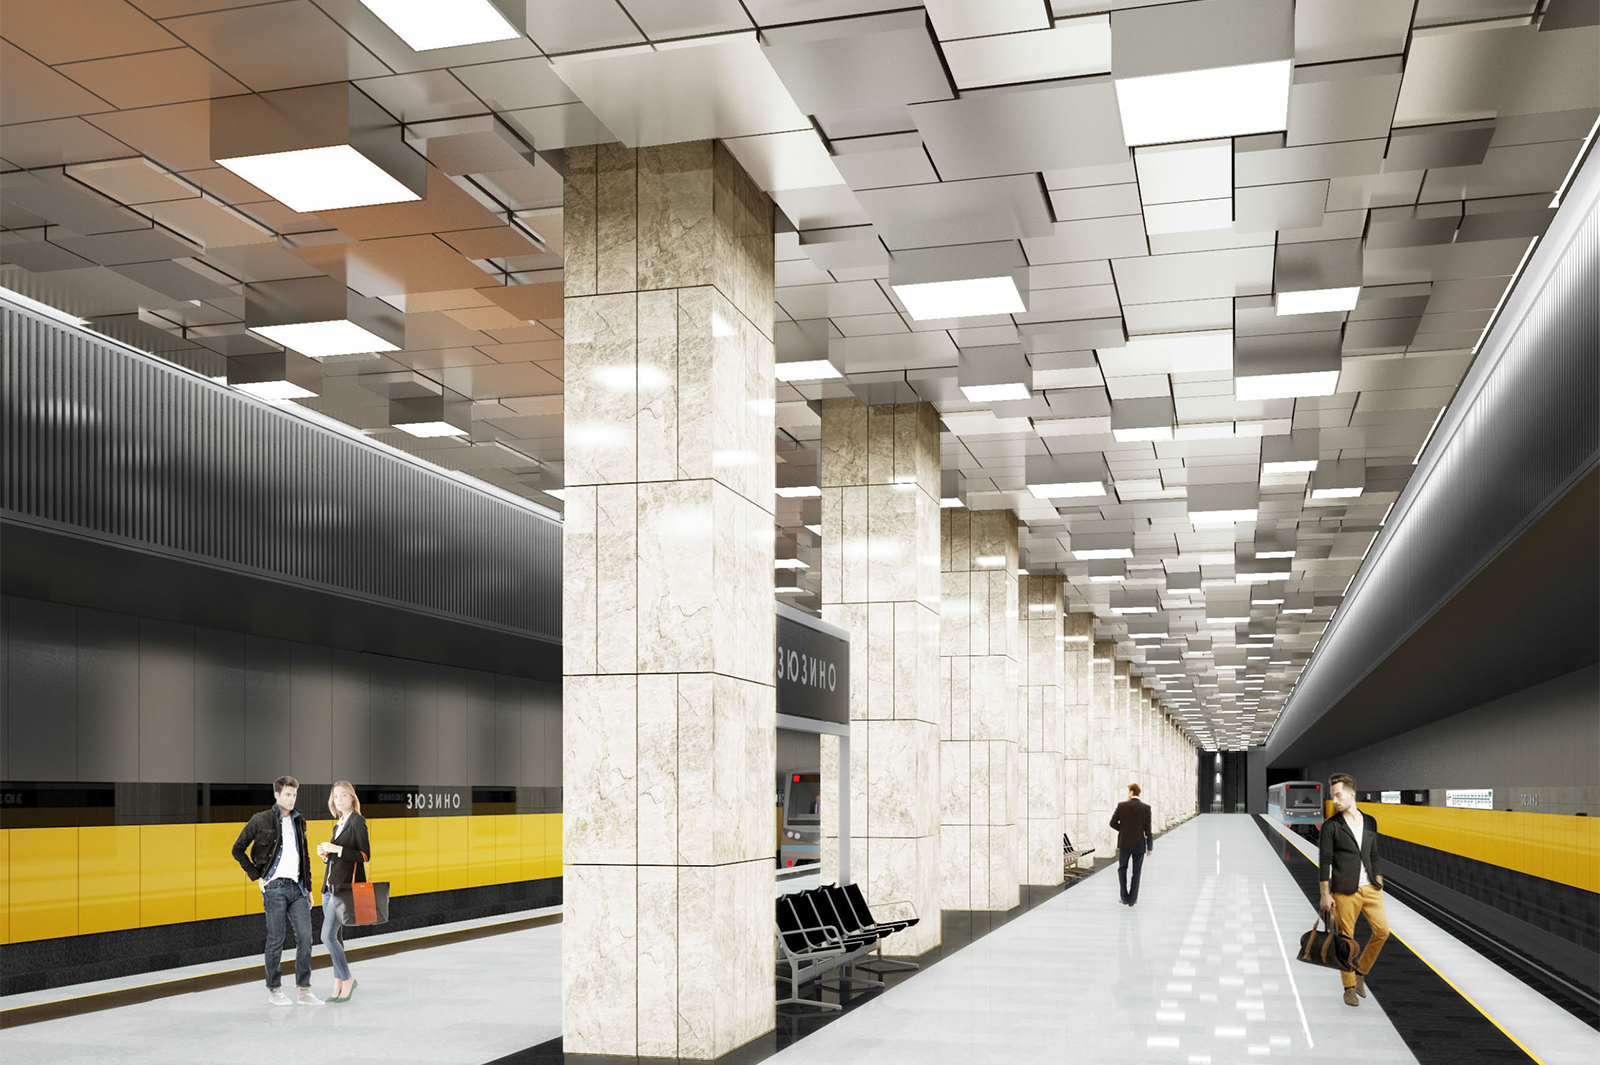 Алюминиевые кубы украсят потолок станции "Зюзино" Большого кольца метро